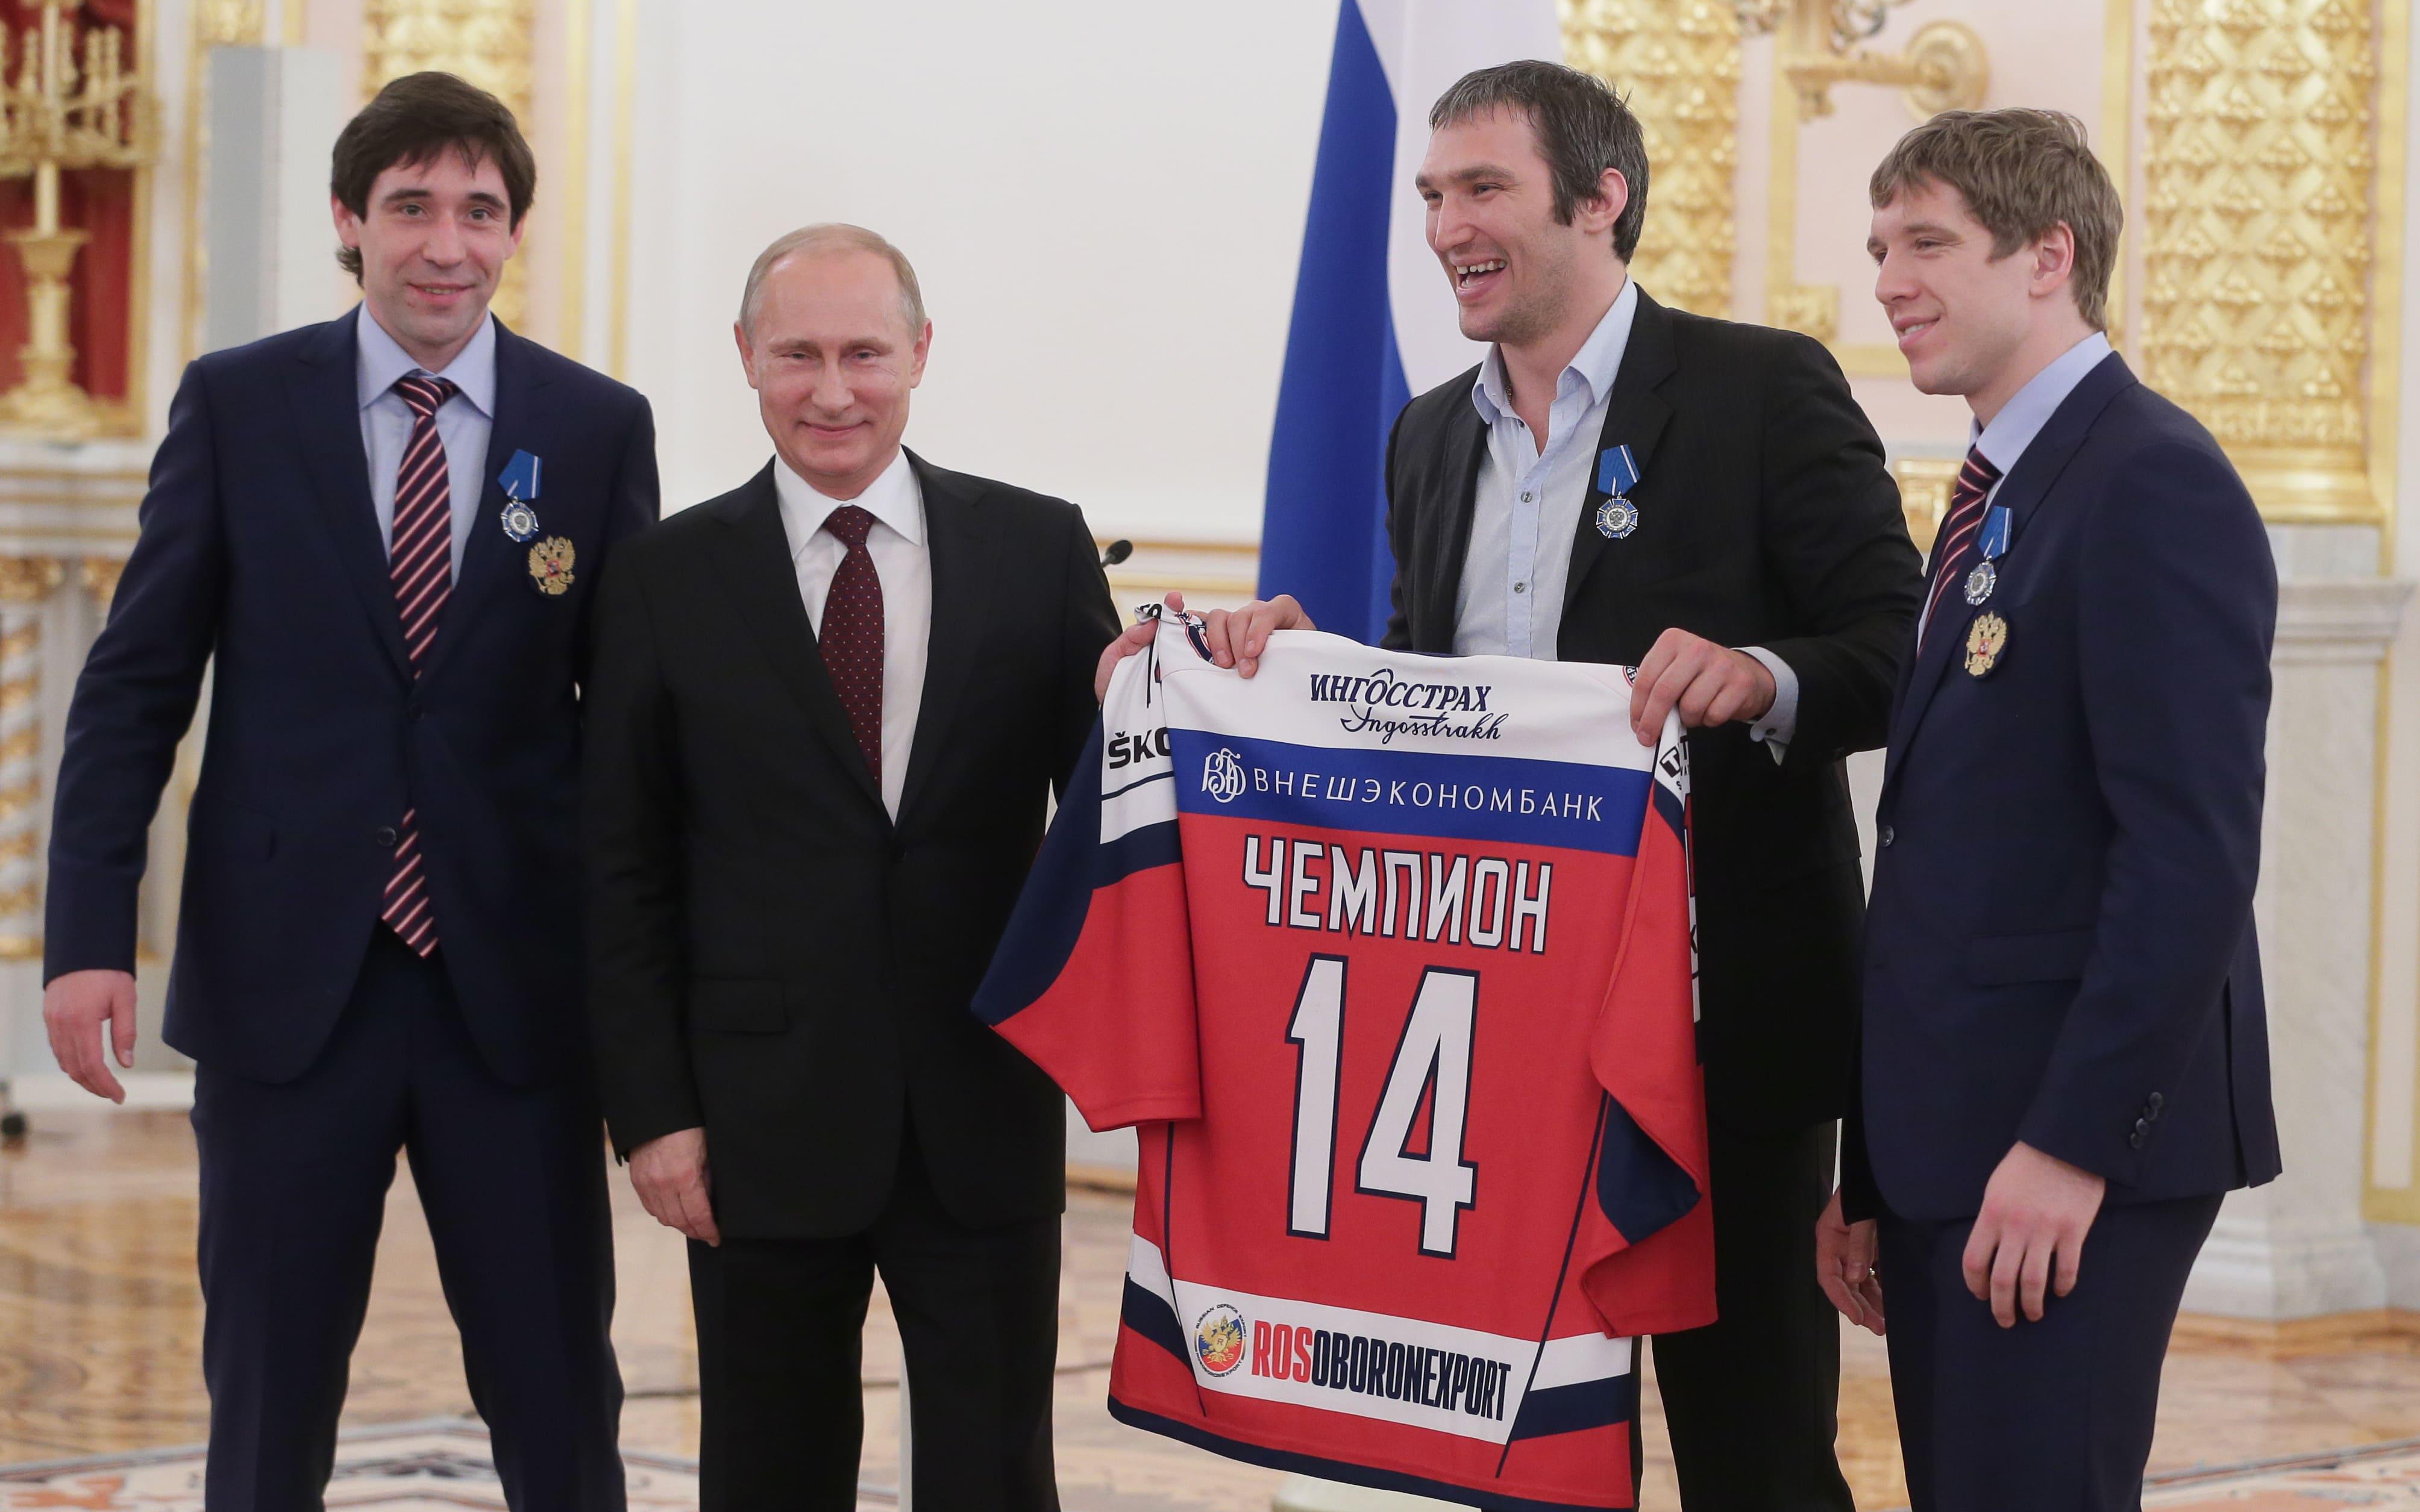 Президент России Владимир Путин (второй слева), Данис Зарипов (слева), Николай Кулемин и Александр Овечкин (справа налево) во время церемонии награждения национальной сборной России по хоккею после победы на чемпионата мира 2014 года